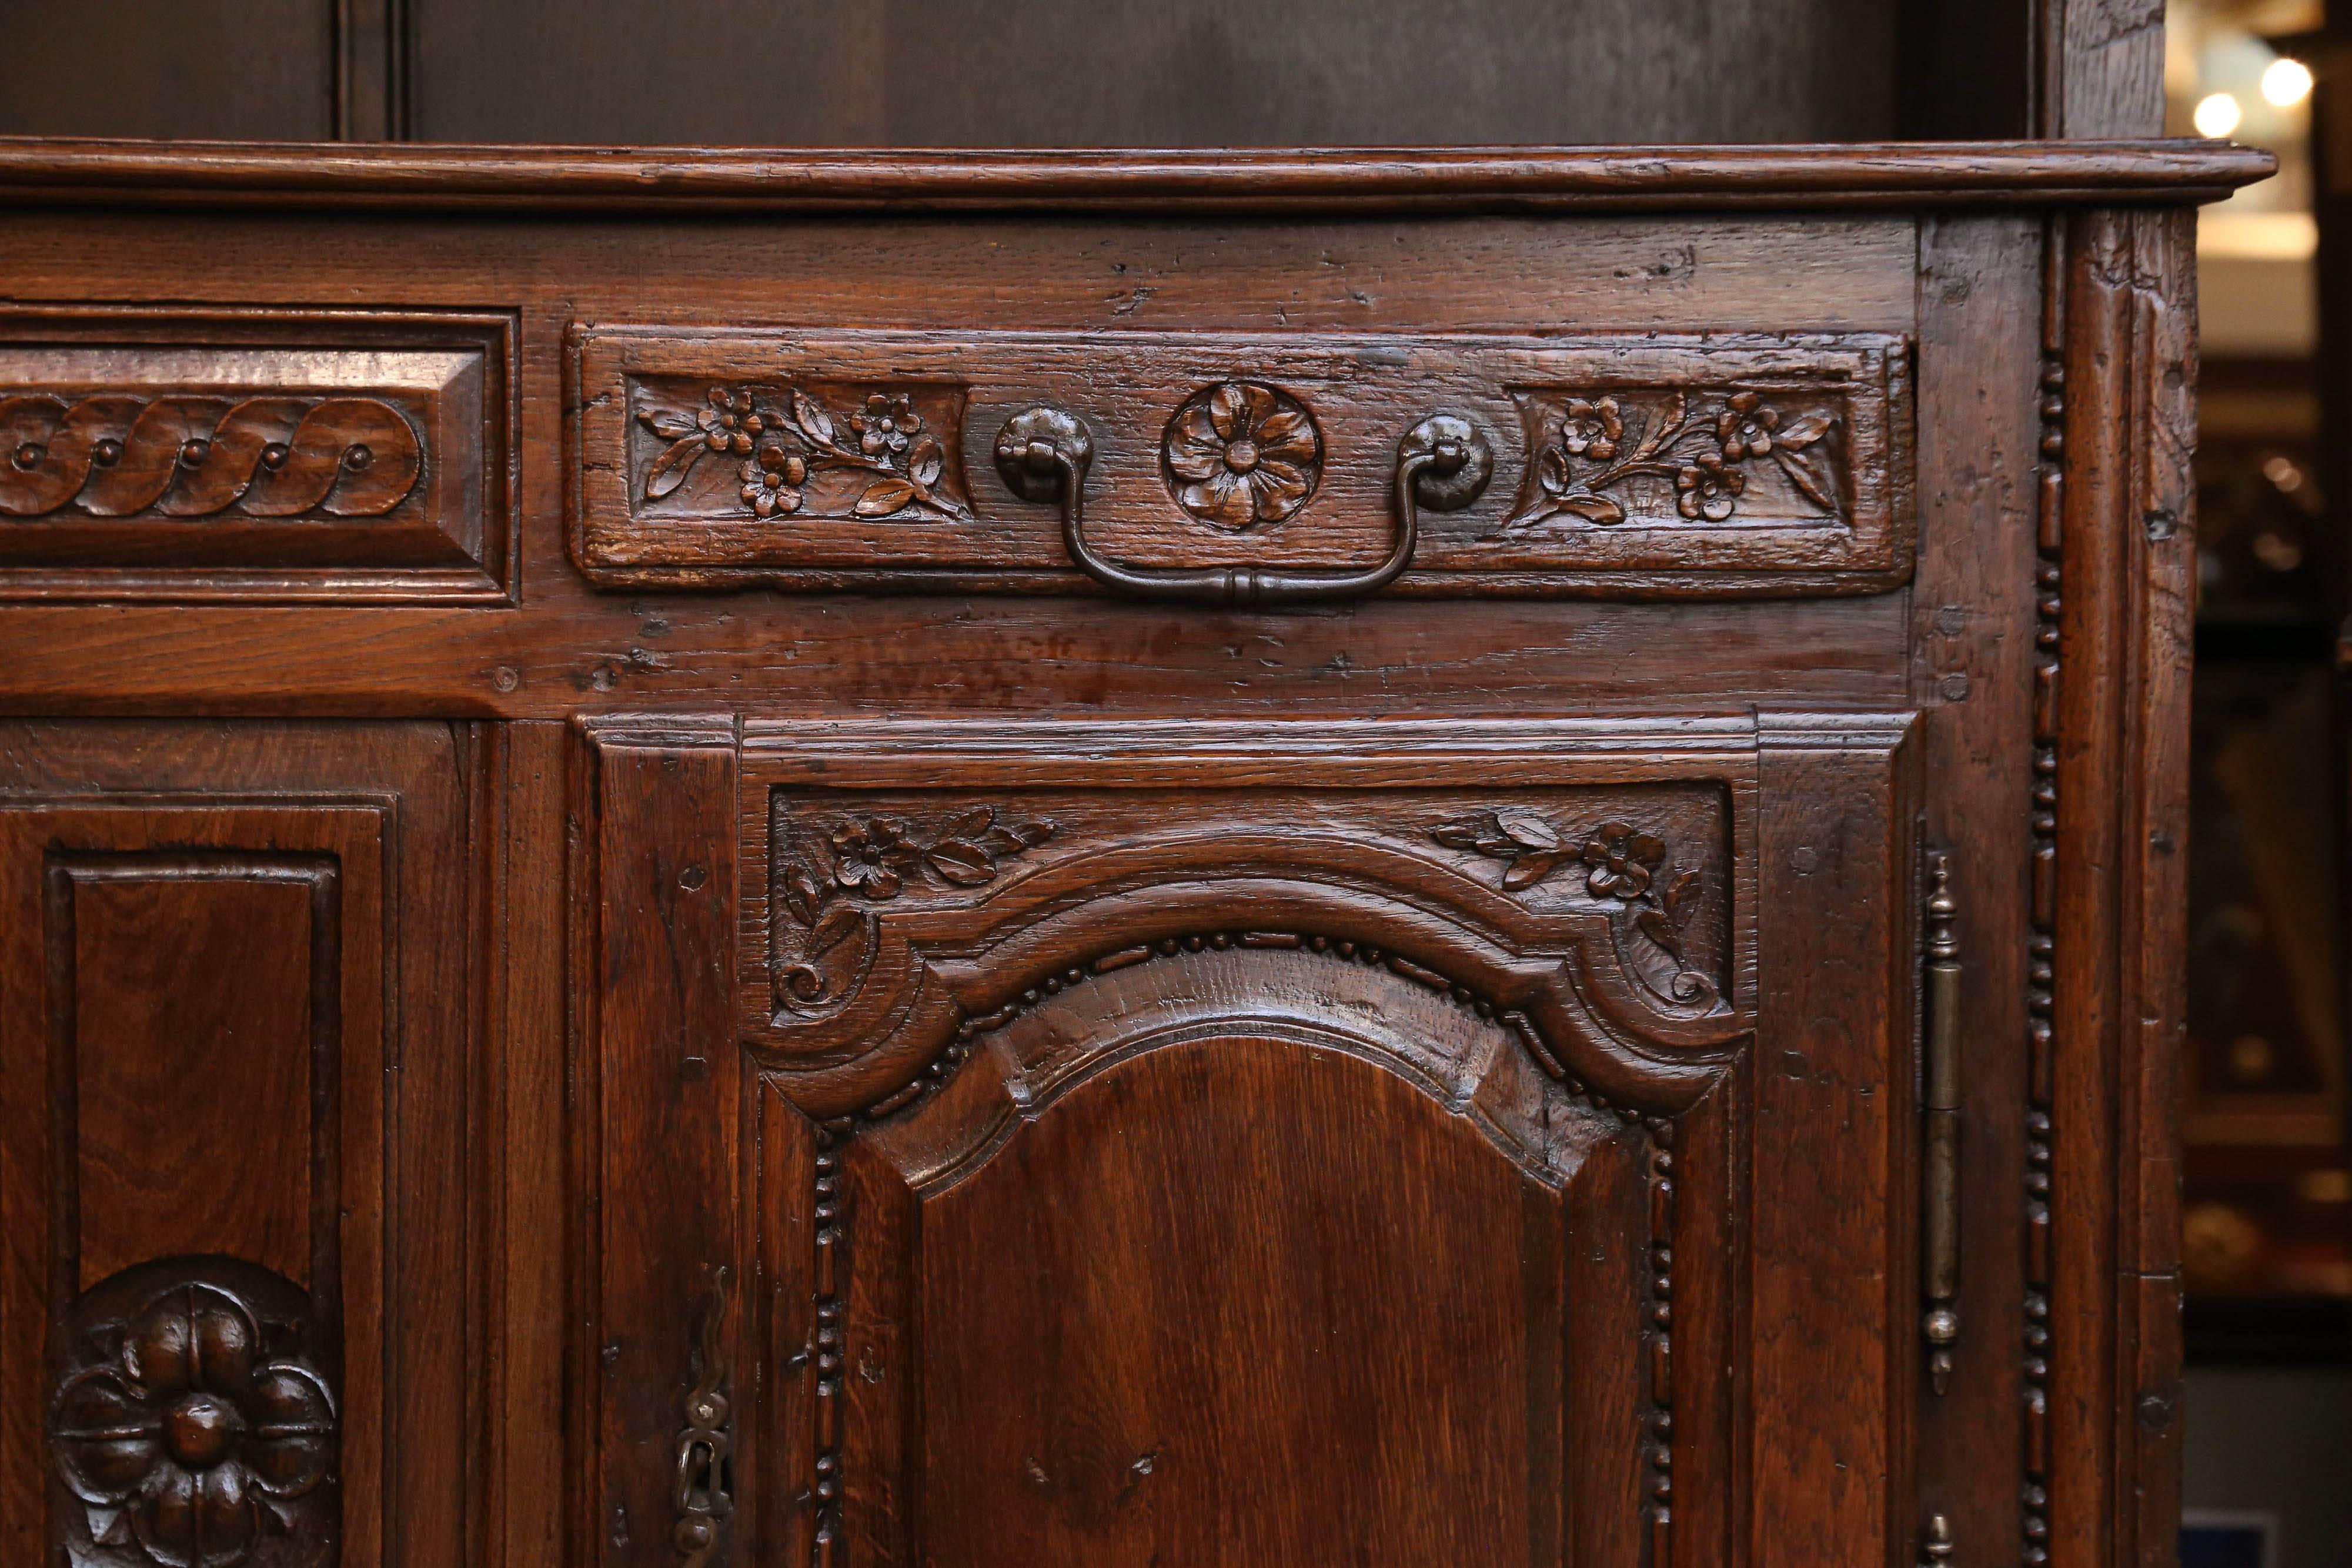 Belle armoire française de campagne du 18ème siècle avec deux portes inférieures s'ouvrant sur l'arrière de l'armoire.
à la zone de stockage. Deux tiroirs avec des poignées d'origine travaillées à la main.
sous la structure supérieure qui contient